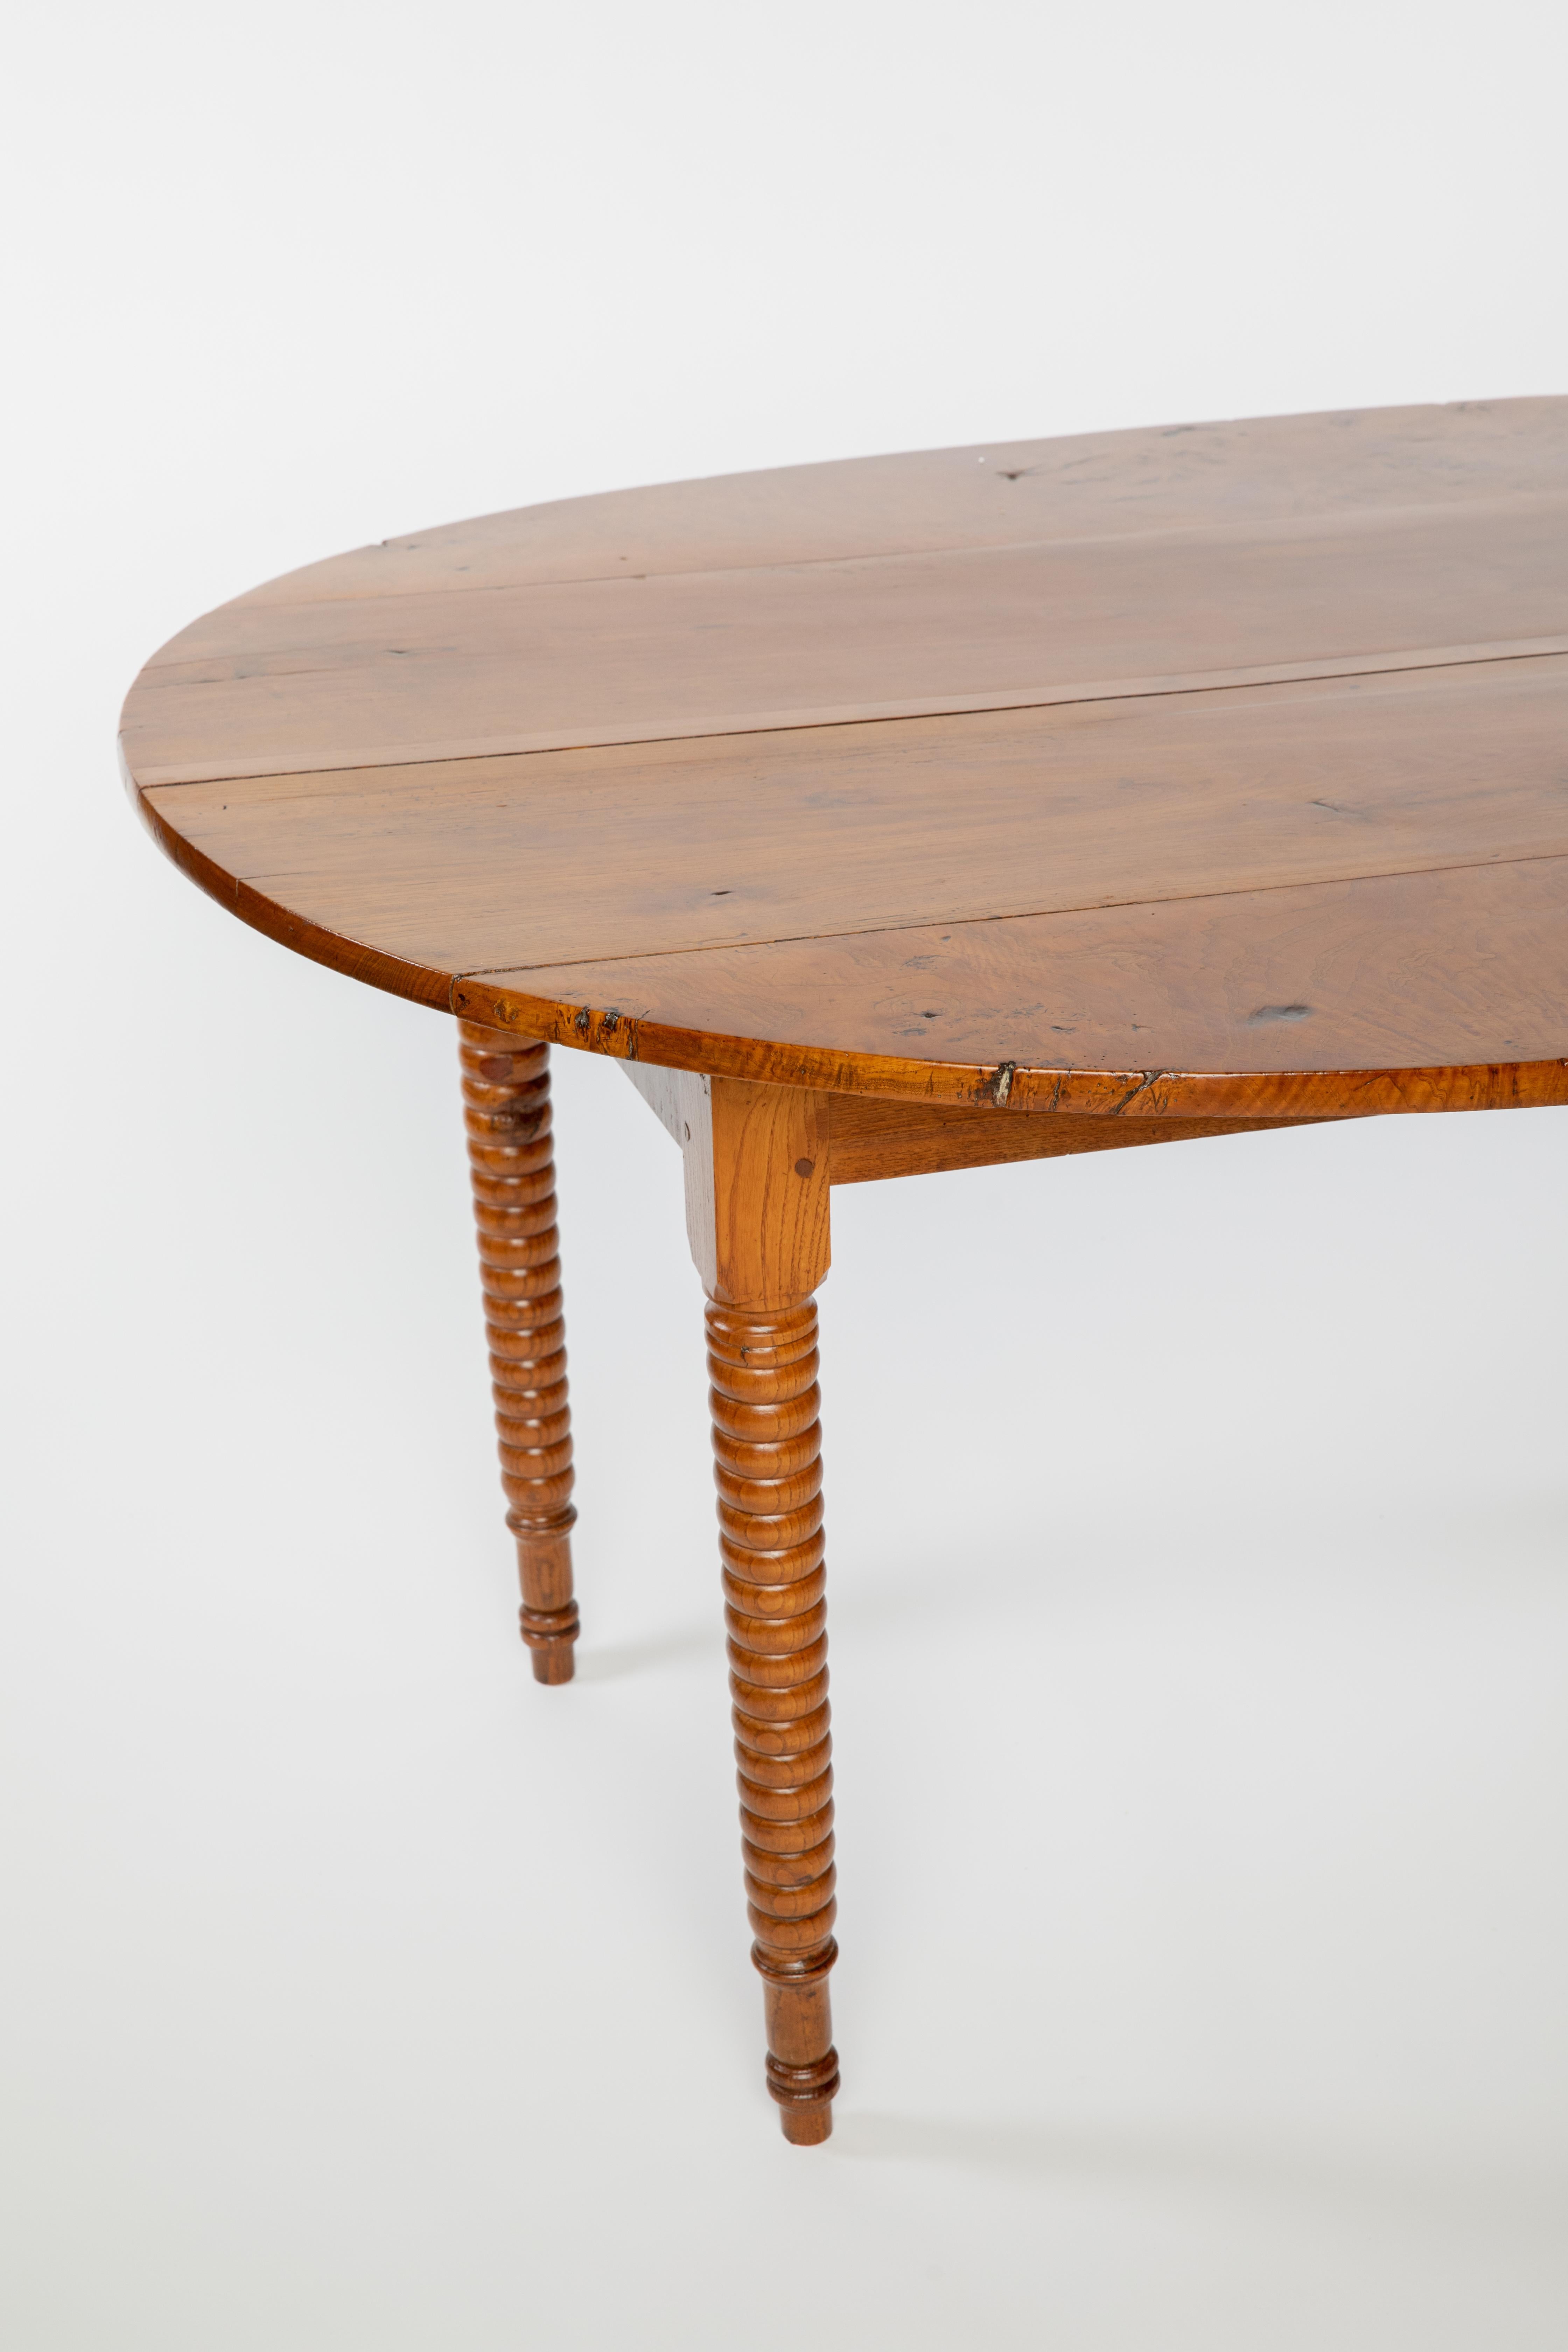 Rustikaler französischer Bauernhoftisch aus gemischtem Holz, 19. Jh., mit ovaler Bohlenplatte, über gedrechselten Beinen, die in stumpfen Pfeilfüßen enden.